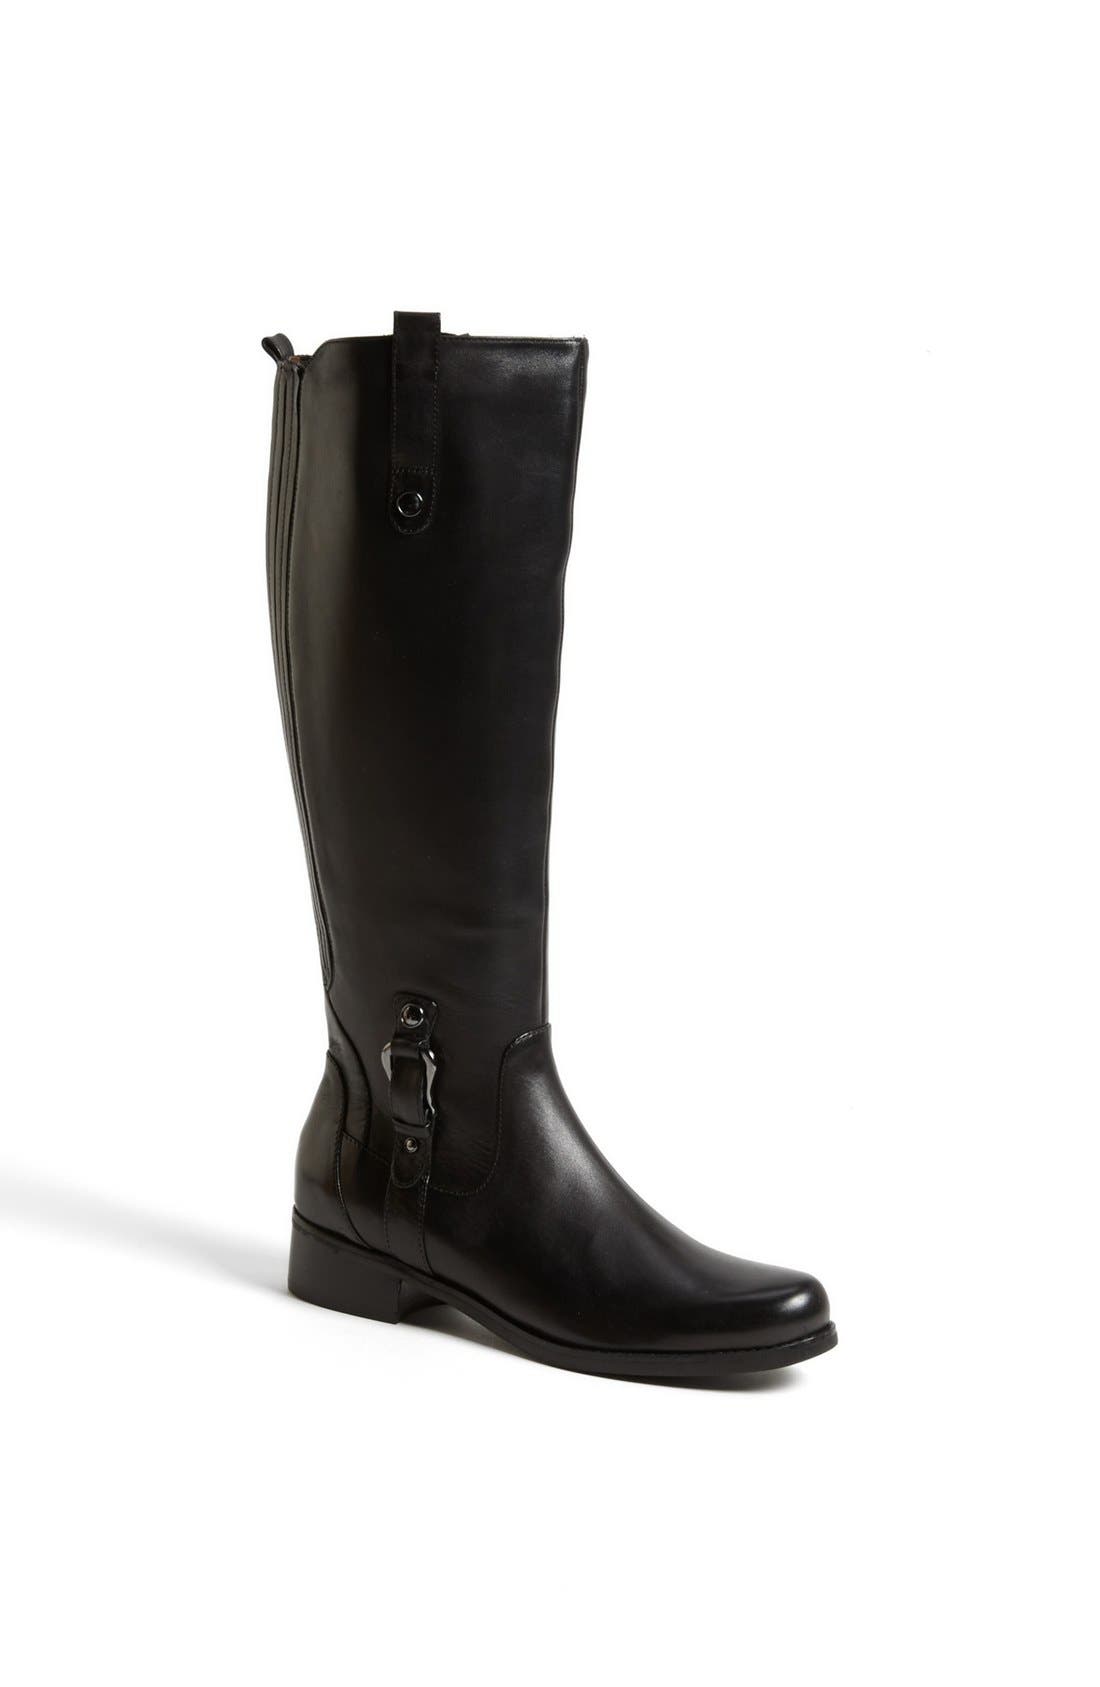 blondo waterproof boots nordstrom